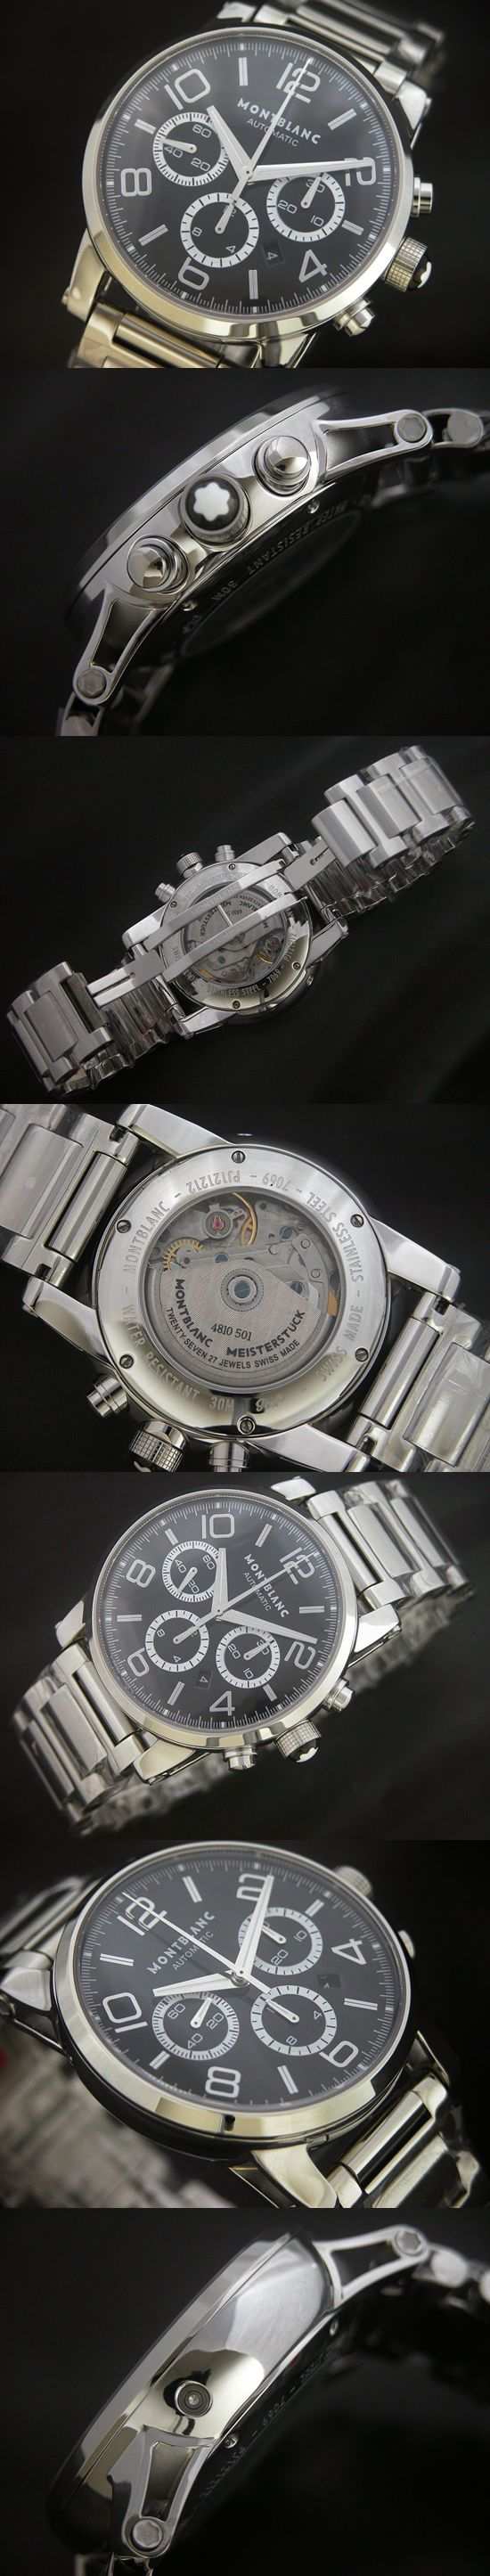 おしゃれなブランド時計がMONTBLANC-モンブラン-36063-ae 男性用腕時計を提供します.